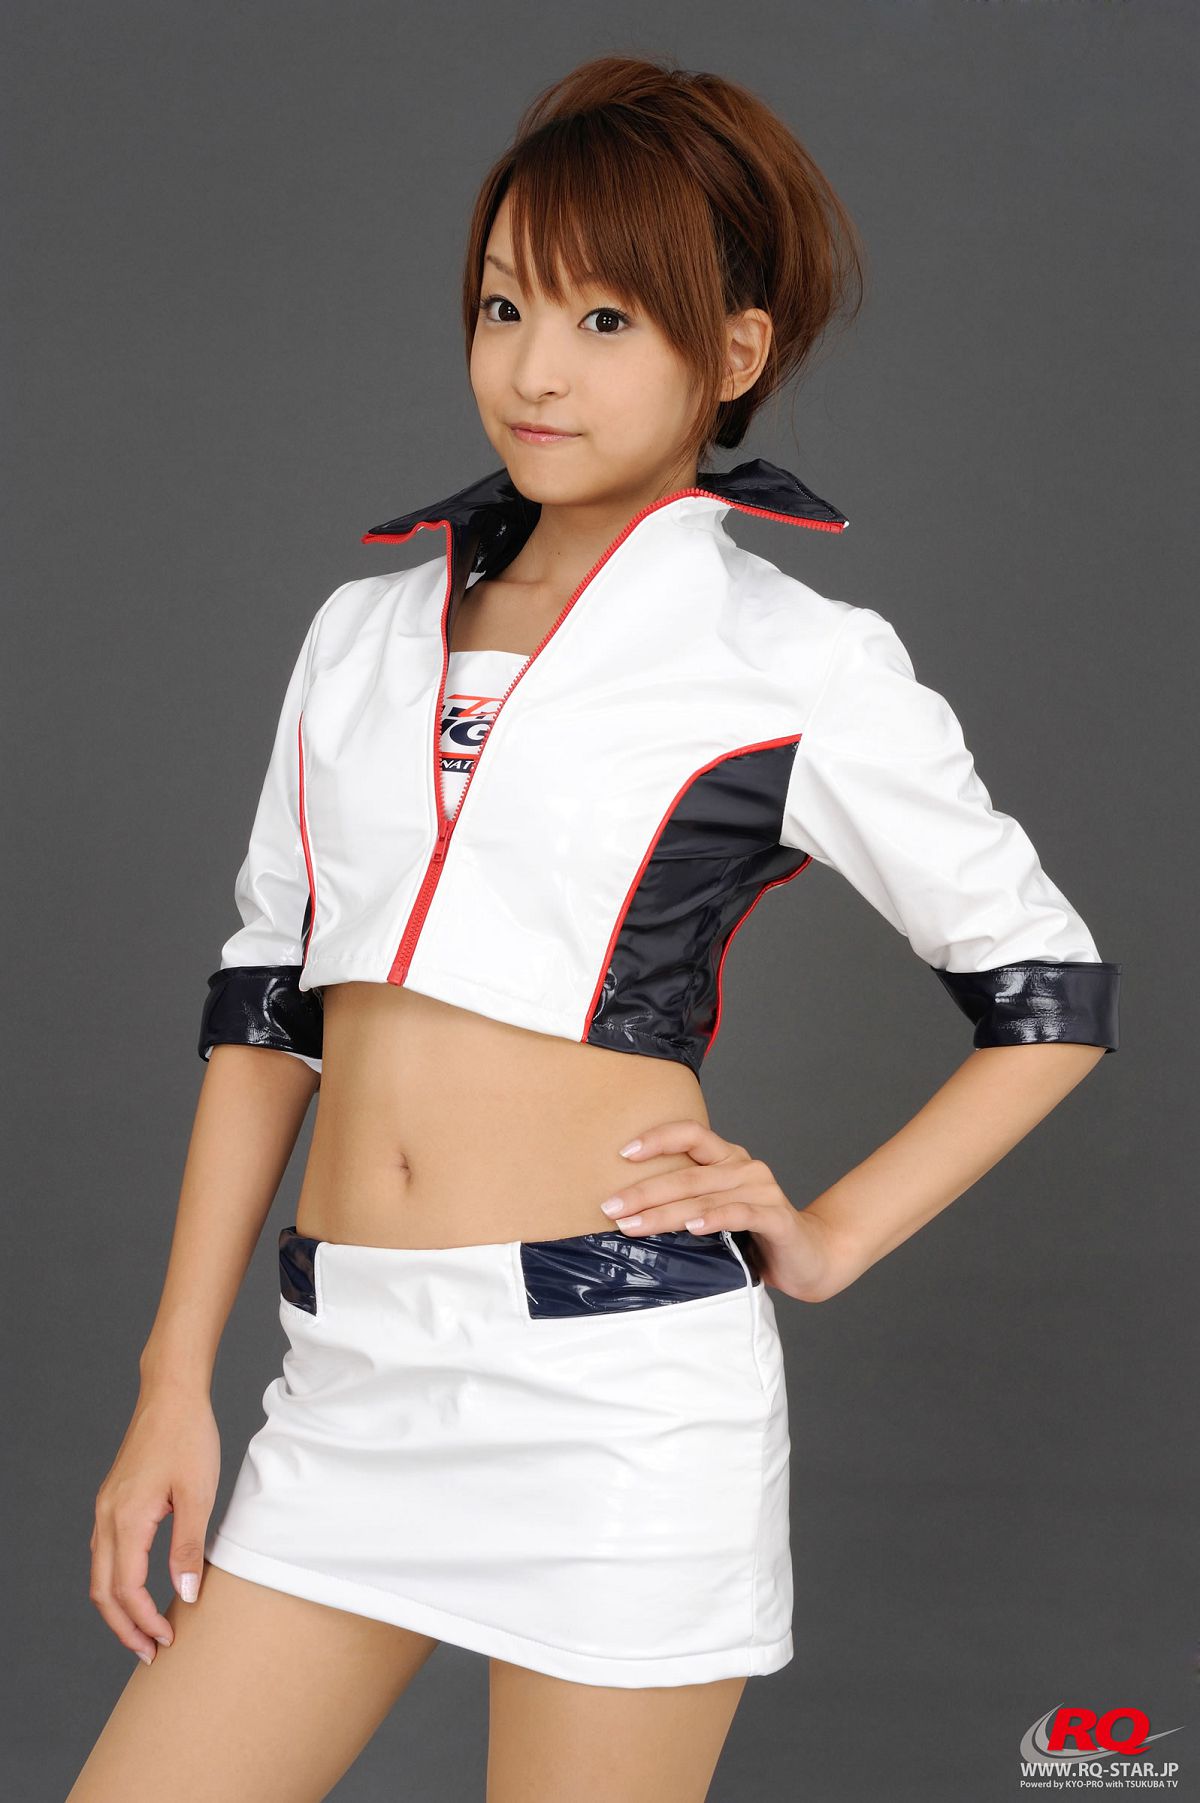 [RQ-STAR] NO.00080 Mio Aoki 青木未央 Race Queen – 2008 5Zigen [99P]